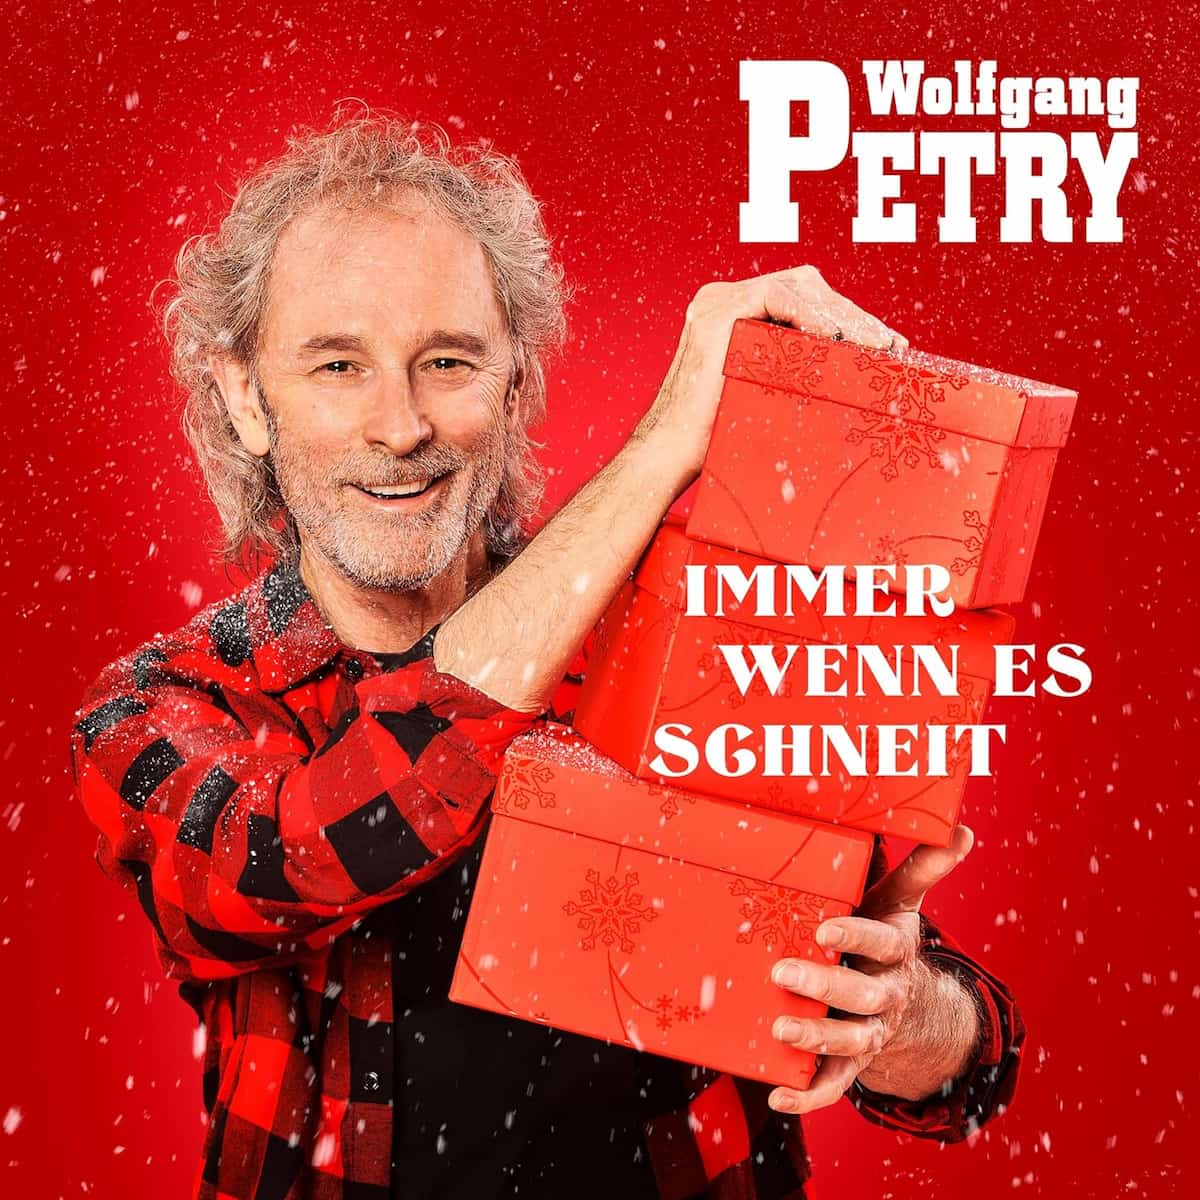 Wolfgang Petry “Immer wenn es schneit” - Weihnachts-Album 2023